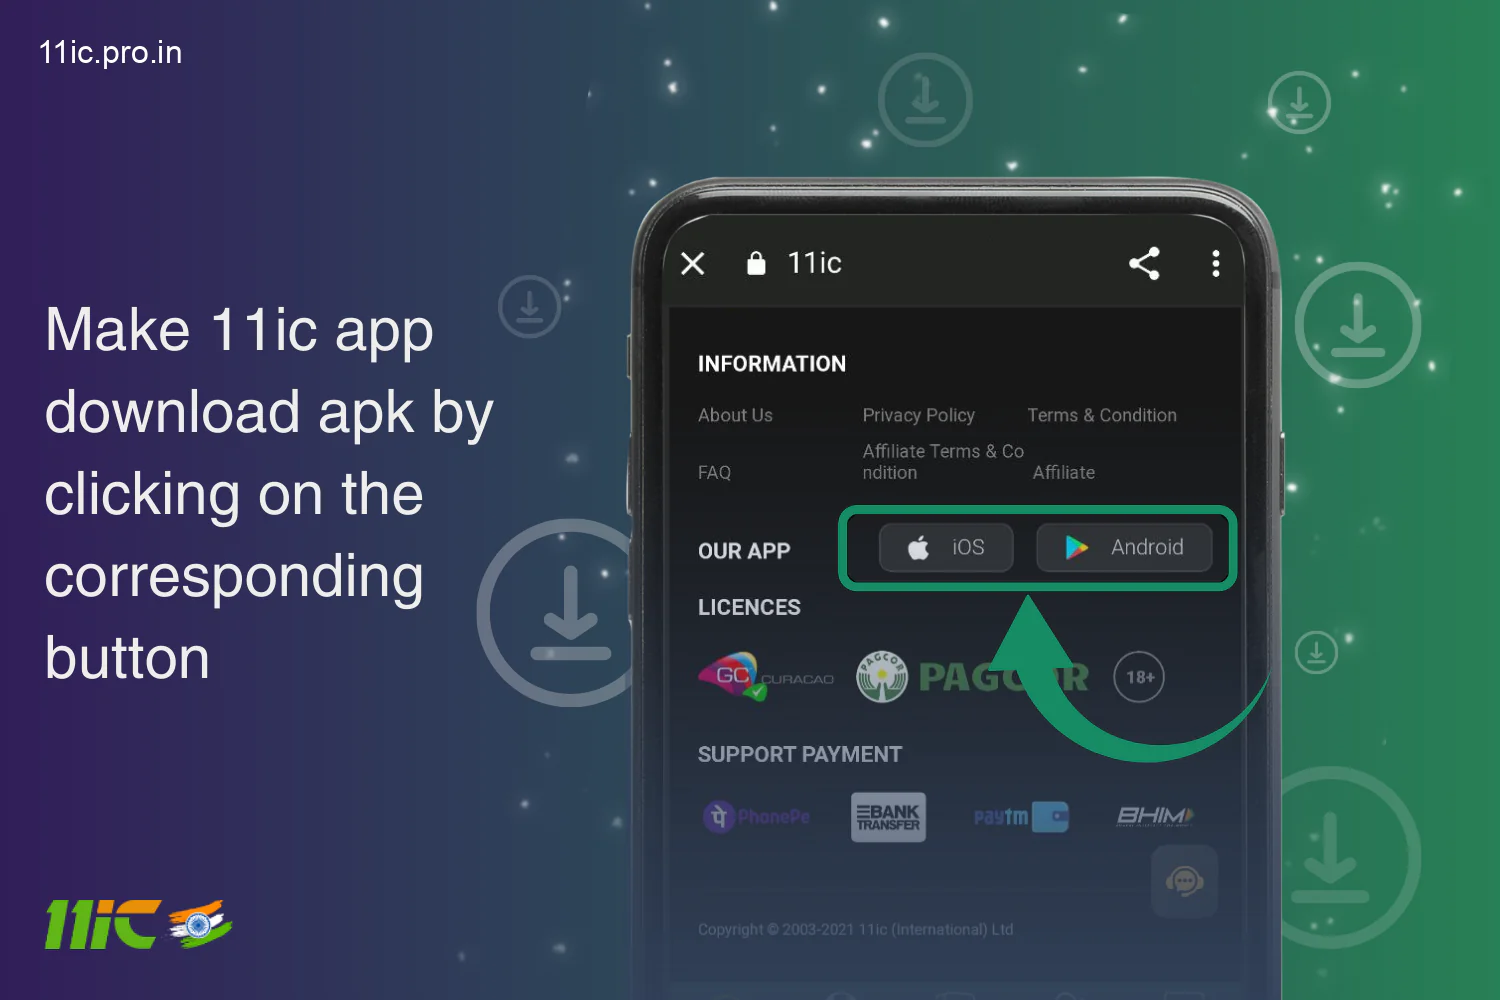 एंड्रॉइड के लिए 11ic ऐप डाउनलोड करना शुरू करने के लिए संबंधित बटन पर क्लिक करें, यह आपके स्मार्टफोन में AFK फ़ाइल डाउनलोड करना शुरू कर देगा।